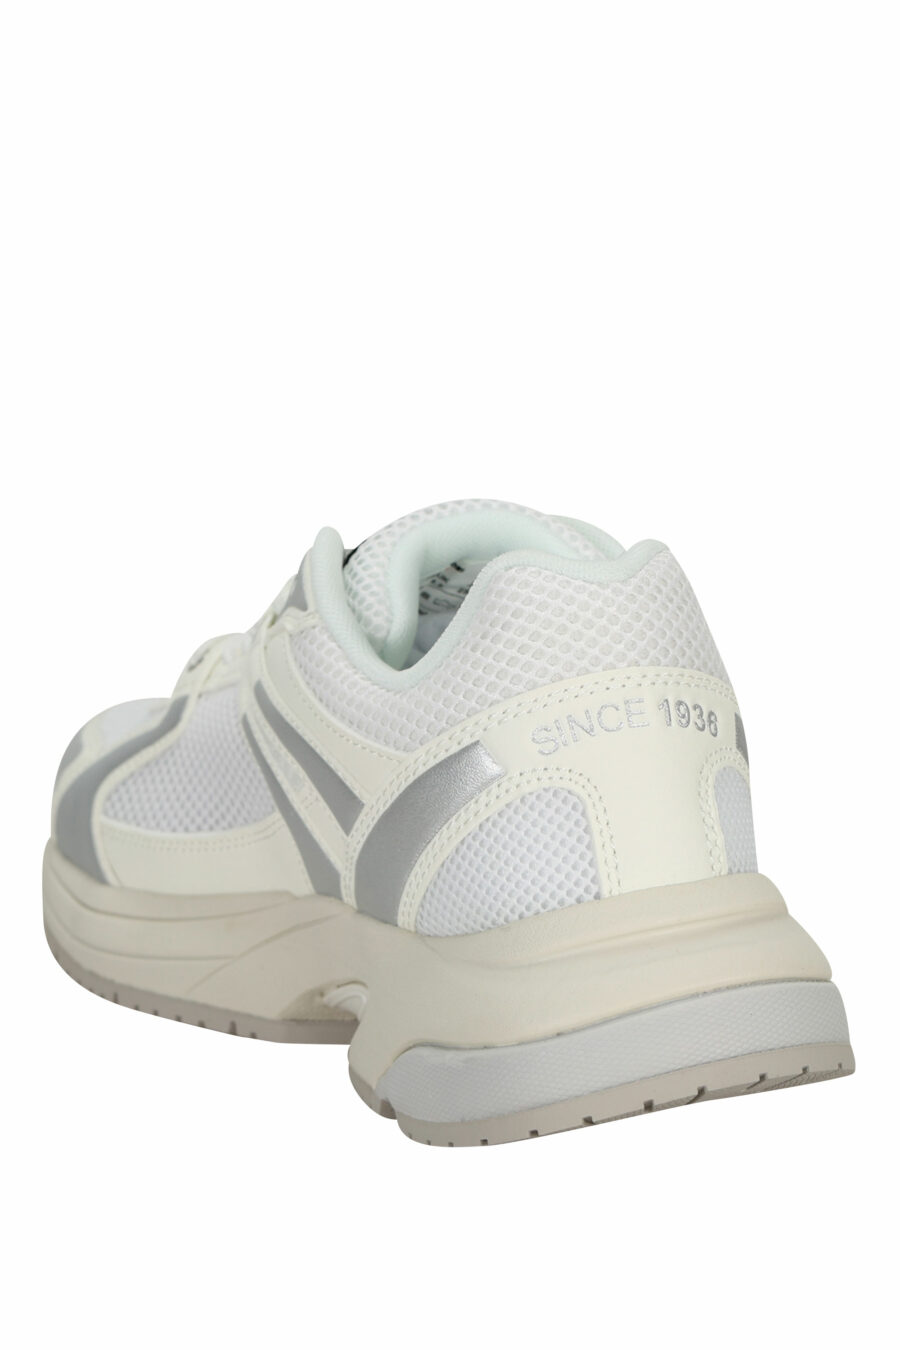 Chaussures blanches avec logo "aigle" argenté et bouclier blanc - 8058156543539 3